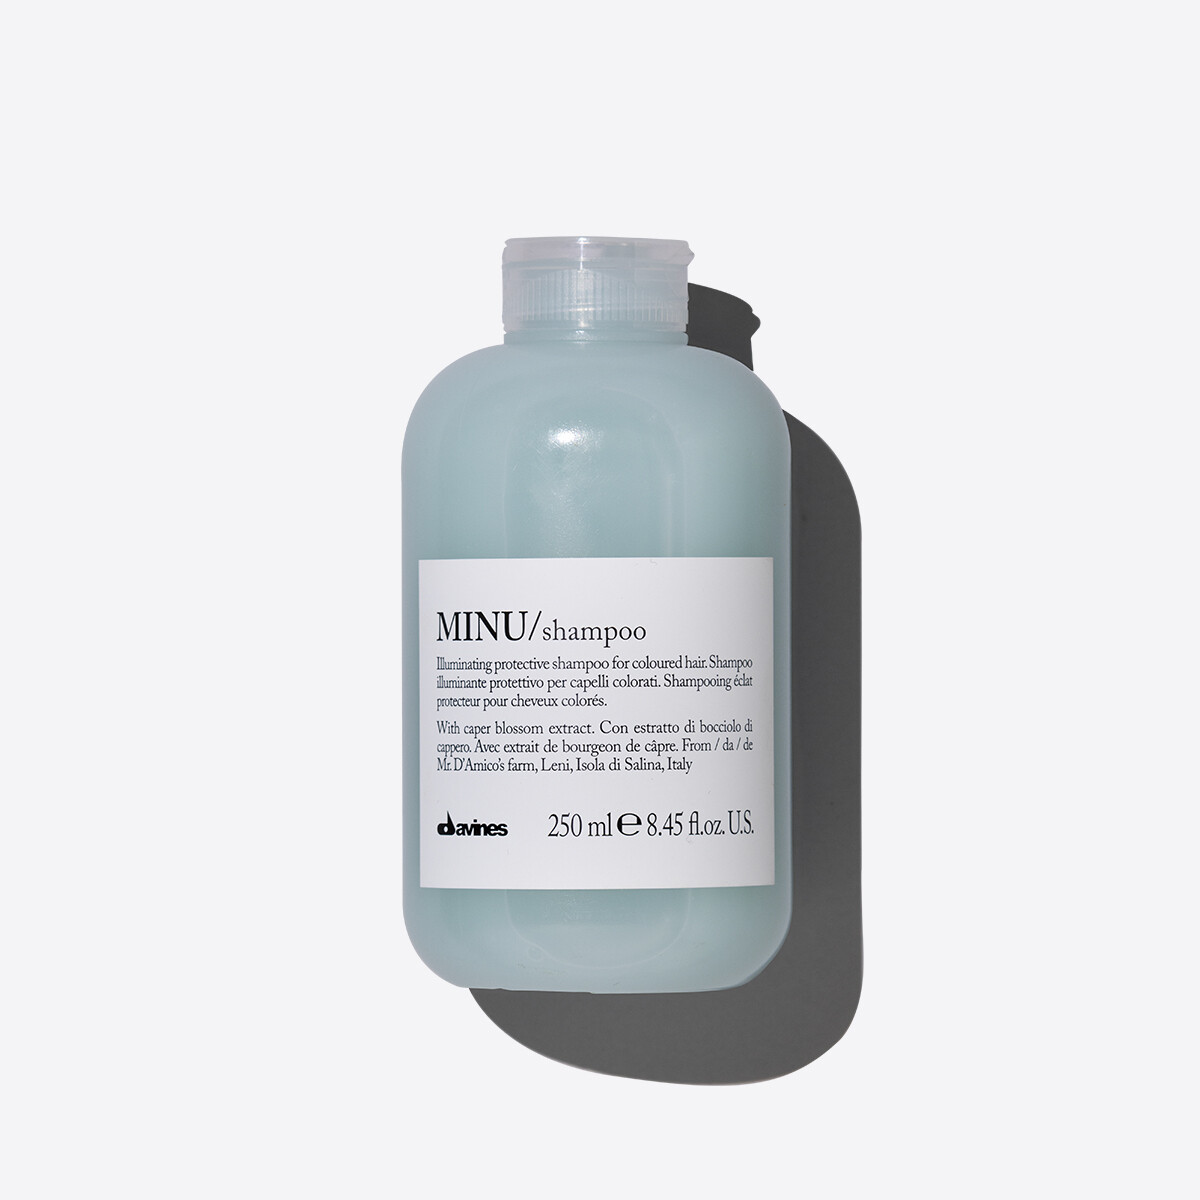 MINU/shampoo 250ml